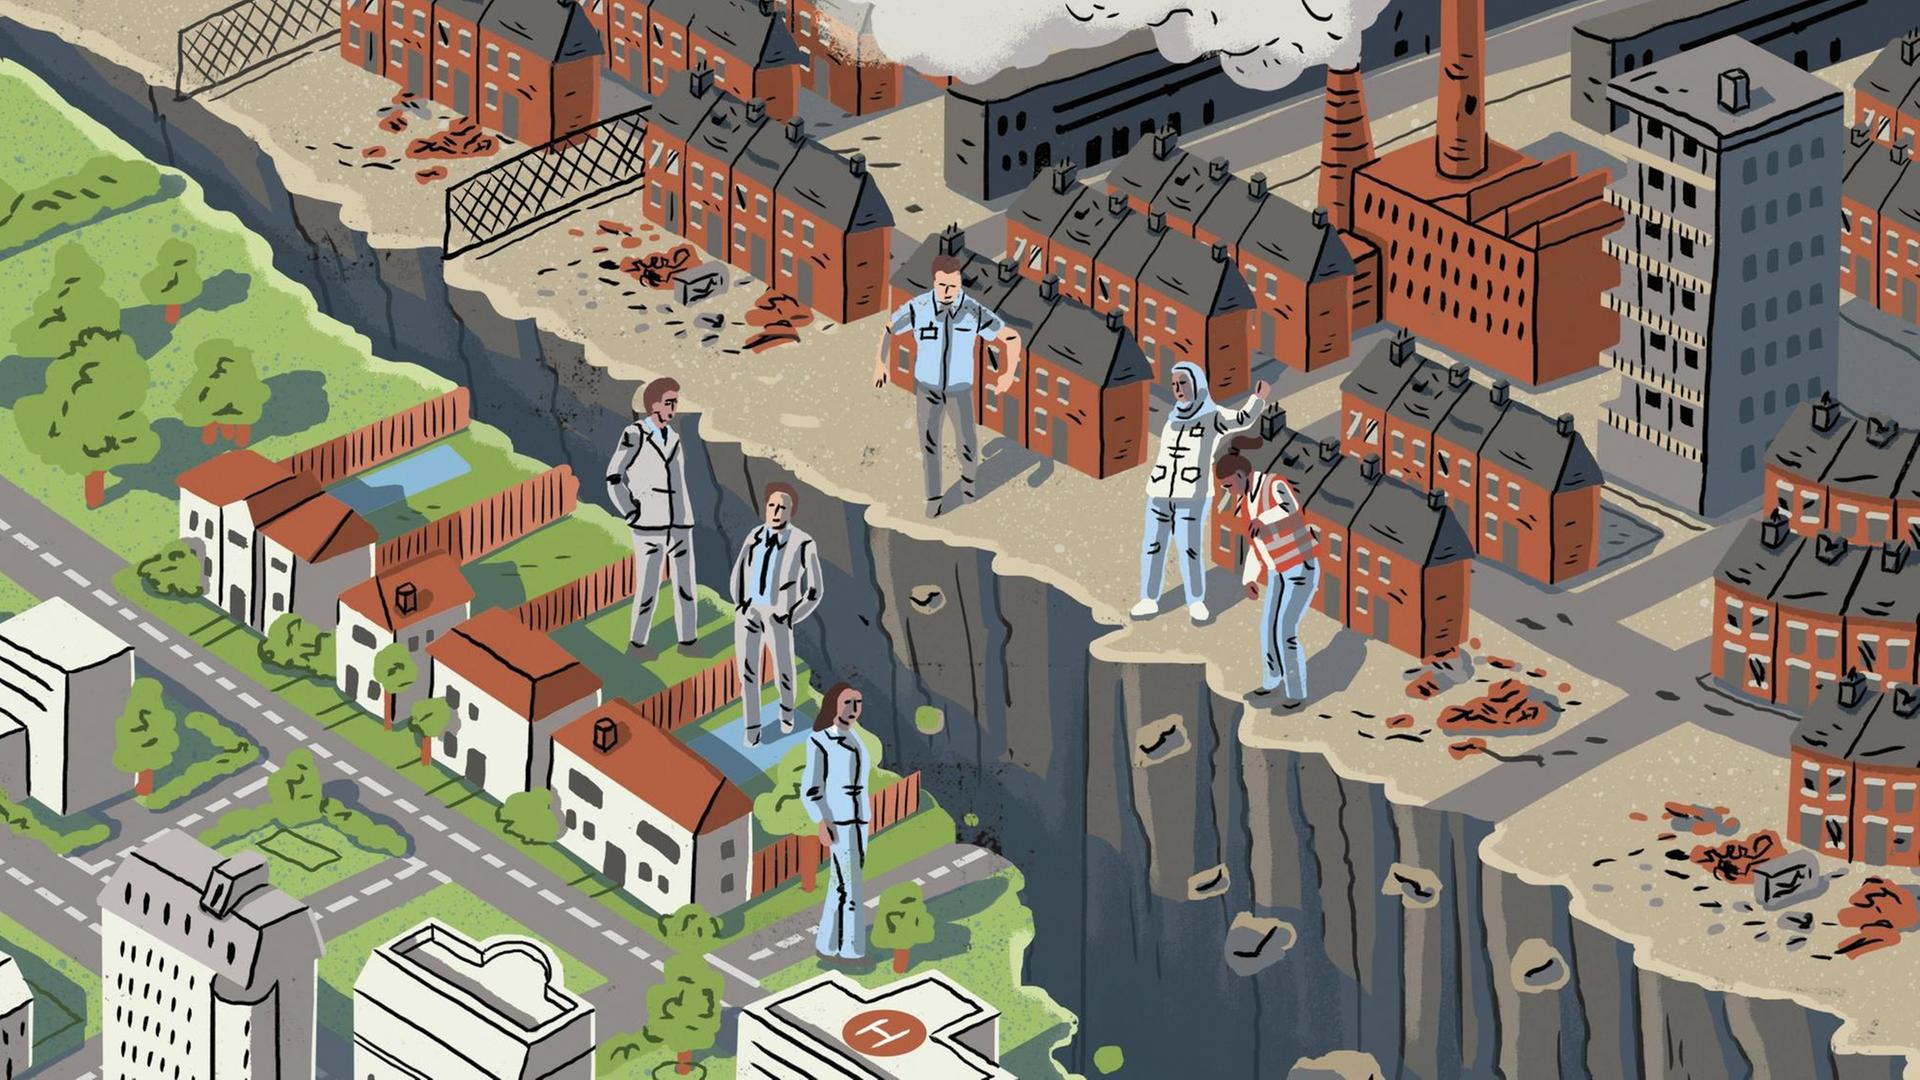 Die Illustration zeigt einen tiefen Graben zwischen einem reichen Stadtviertel und einem armen Stadtviertel. Auf jeder Seite stehen sich drei Menschen gegenüber.